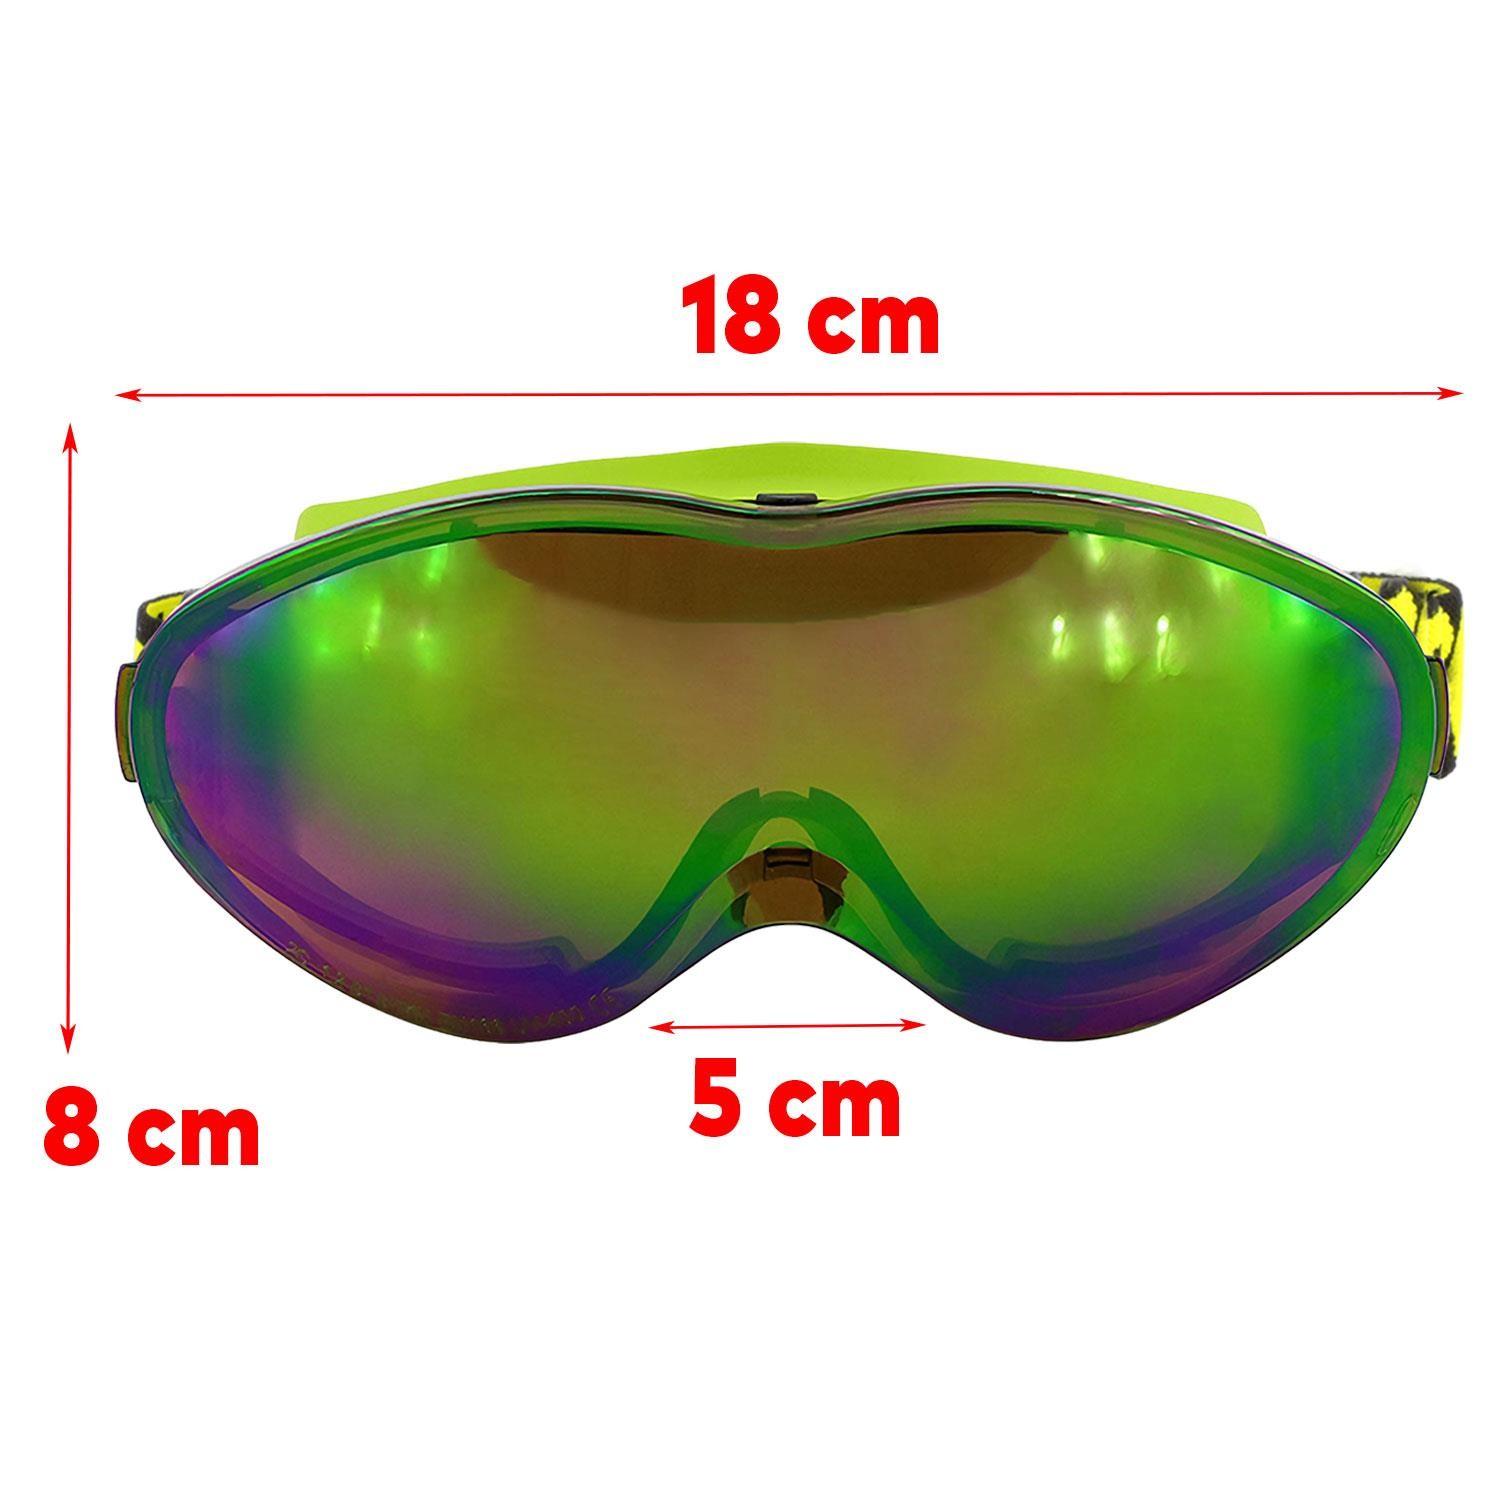 Bellasimo Kayak Gözlüğü Değiştirebilir Camlı Antifog Güneş Kar Gözlük Gökkuşağı Snowboard Glasses Gözlük+1 Adet Yedek Cam (Sarı)